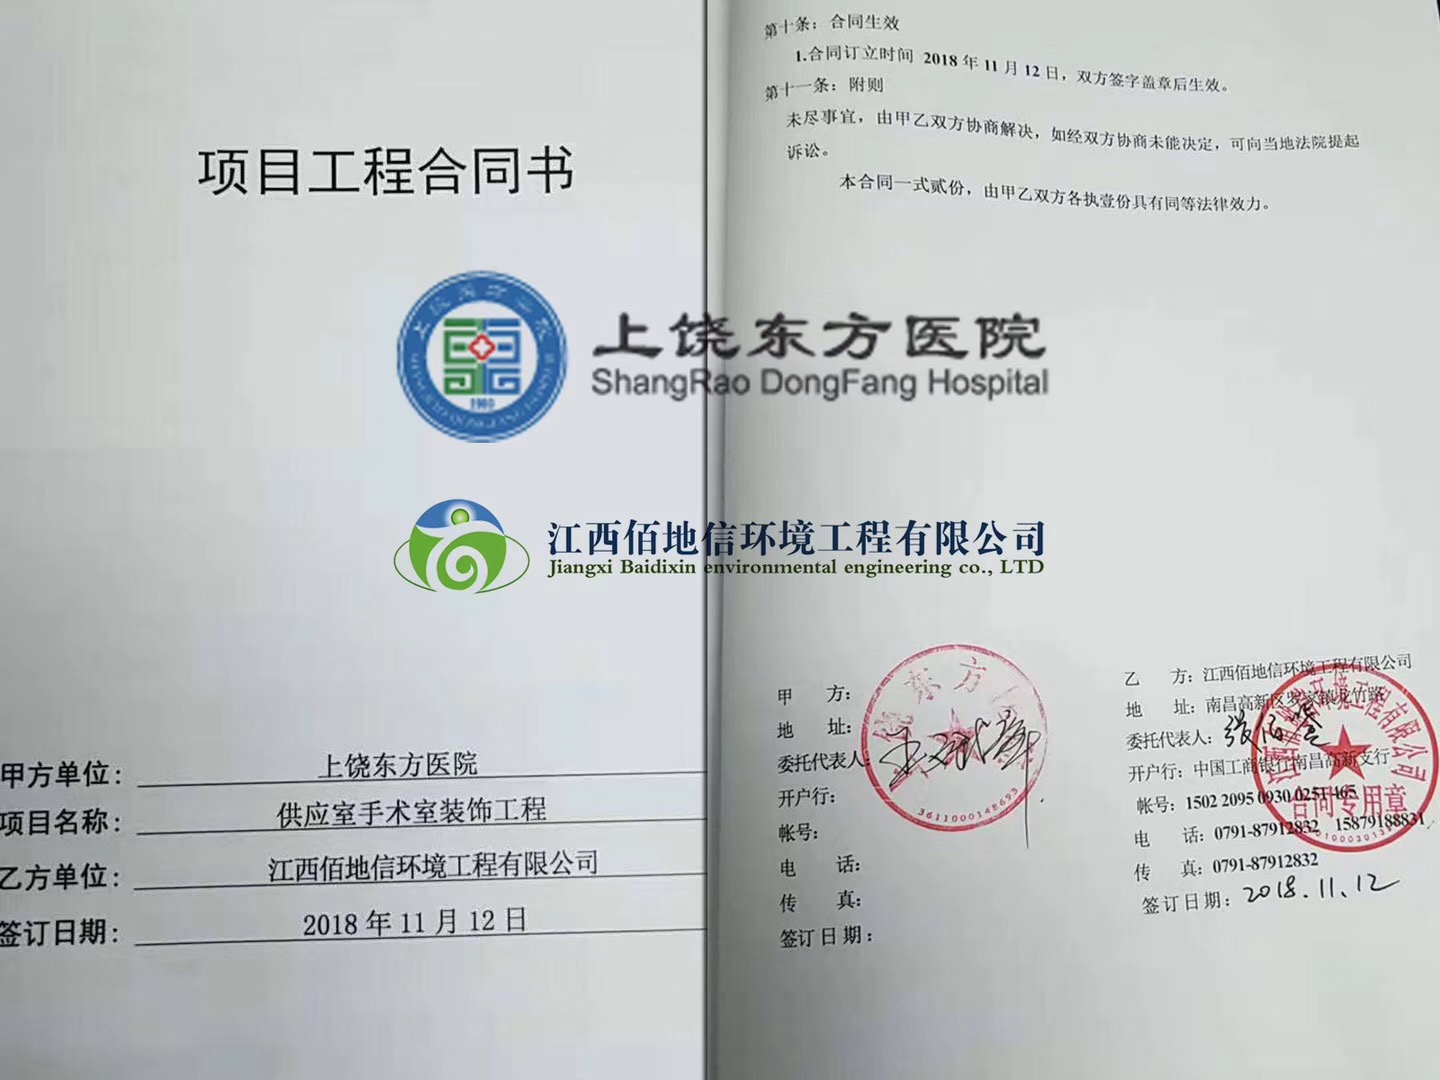 江西佰地信环境工程有限公司与上饶东方医院成功签约合同